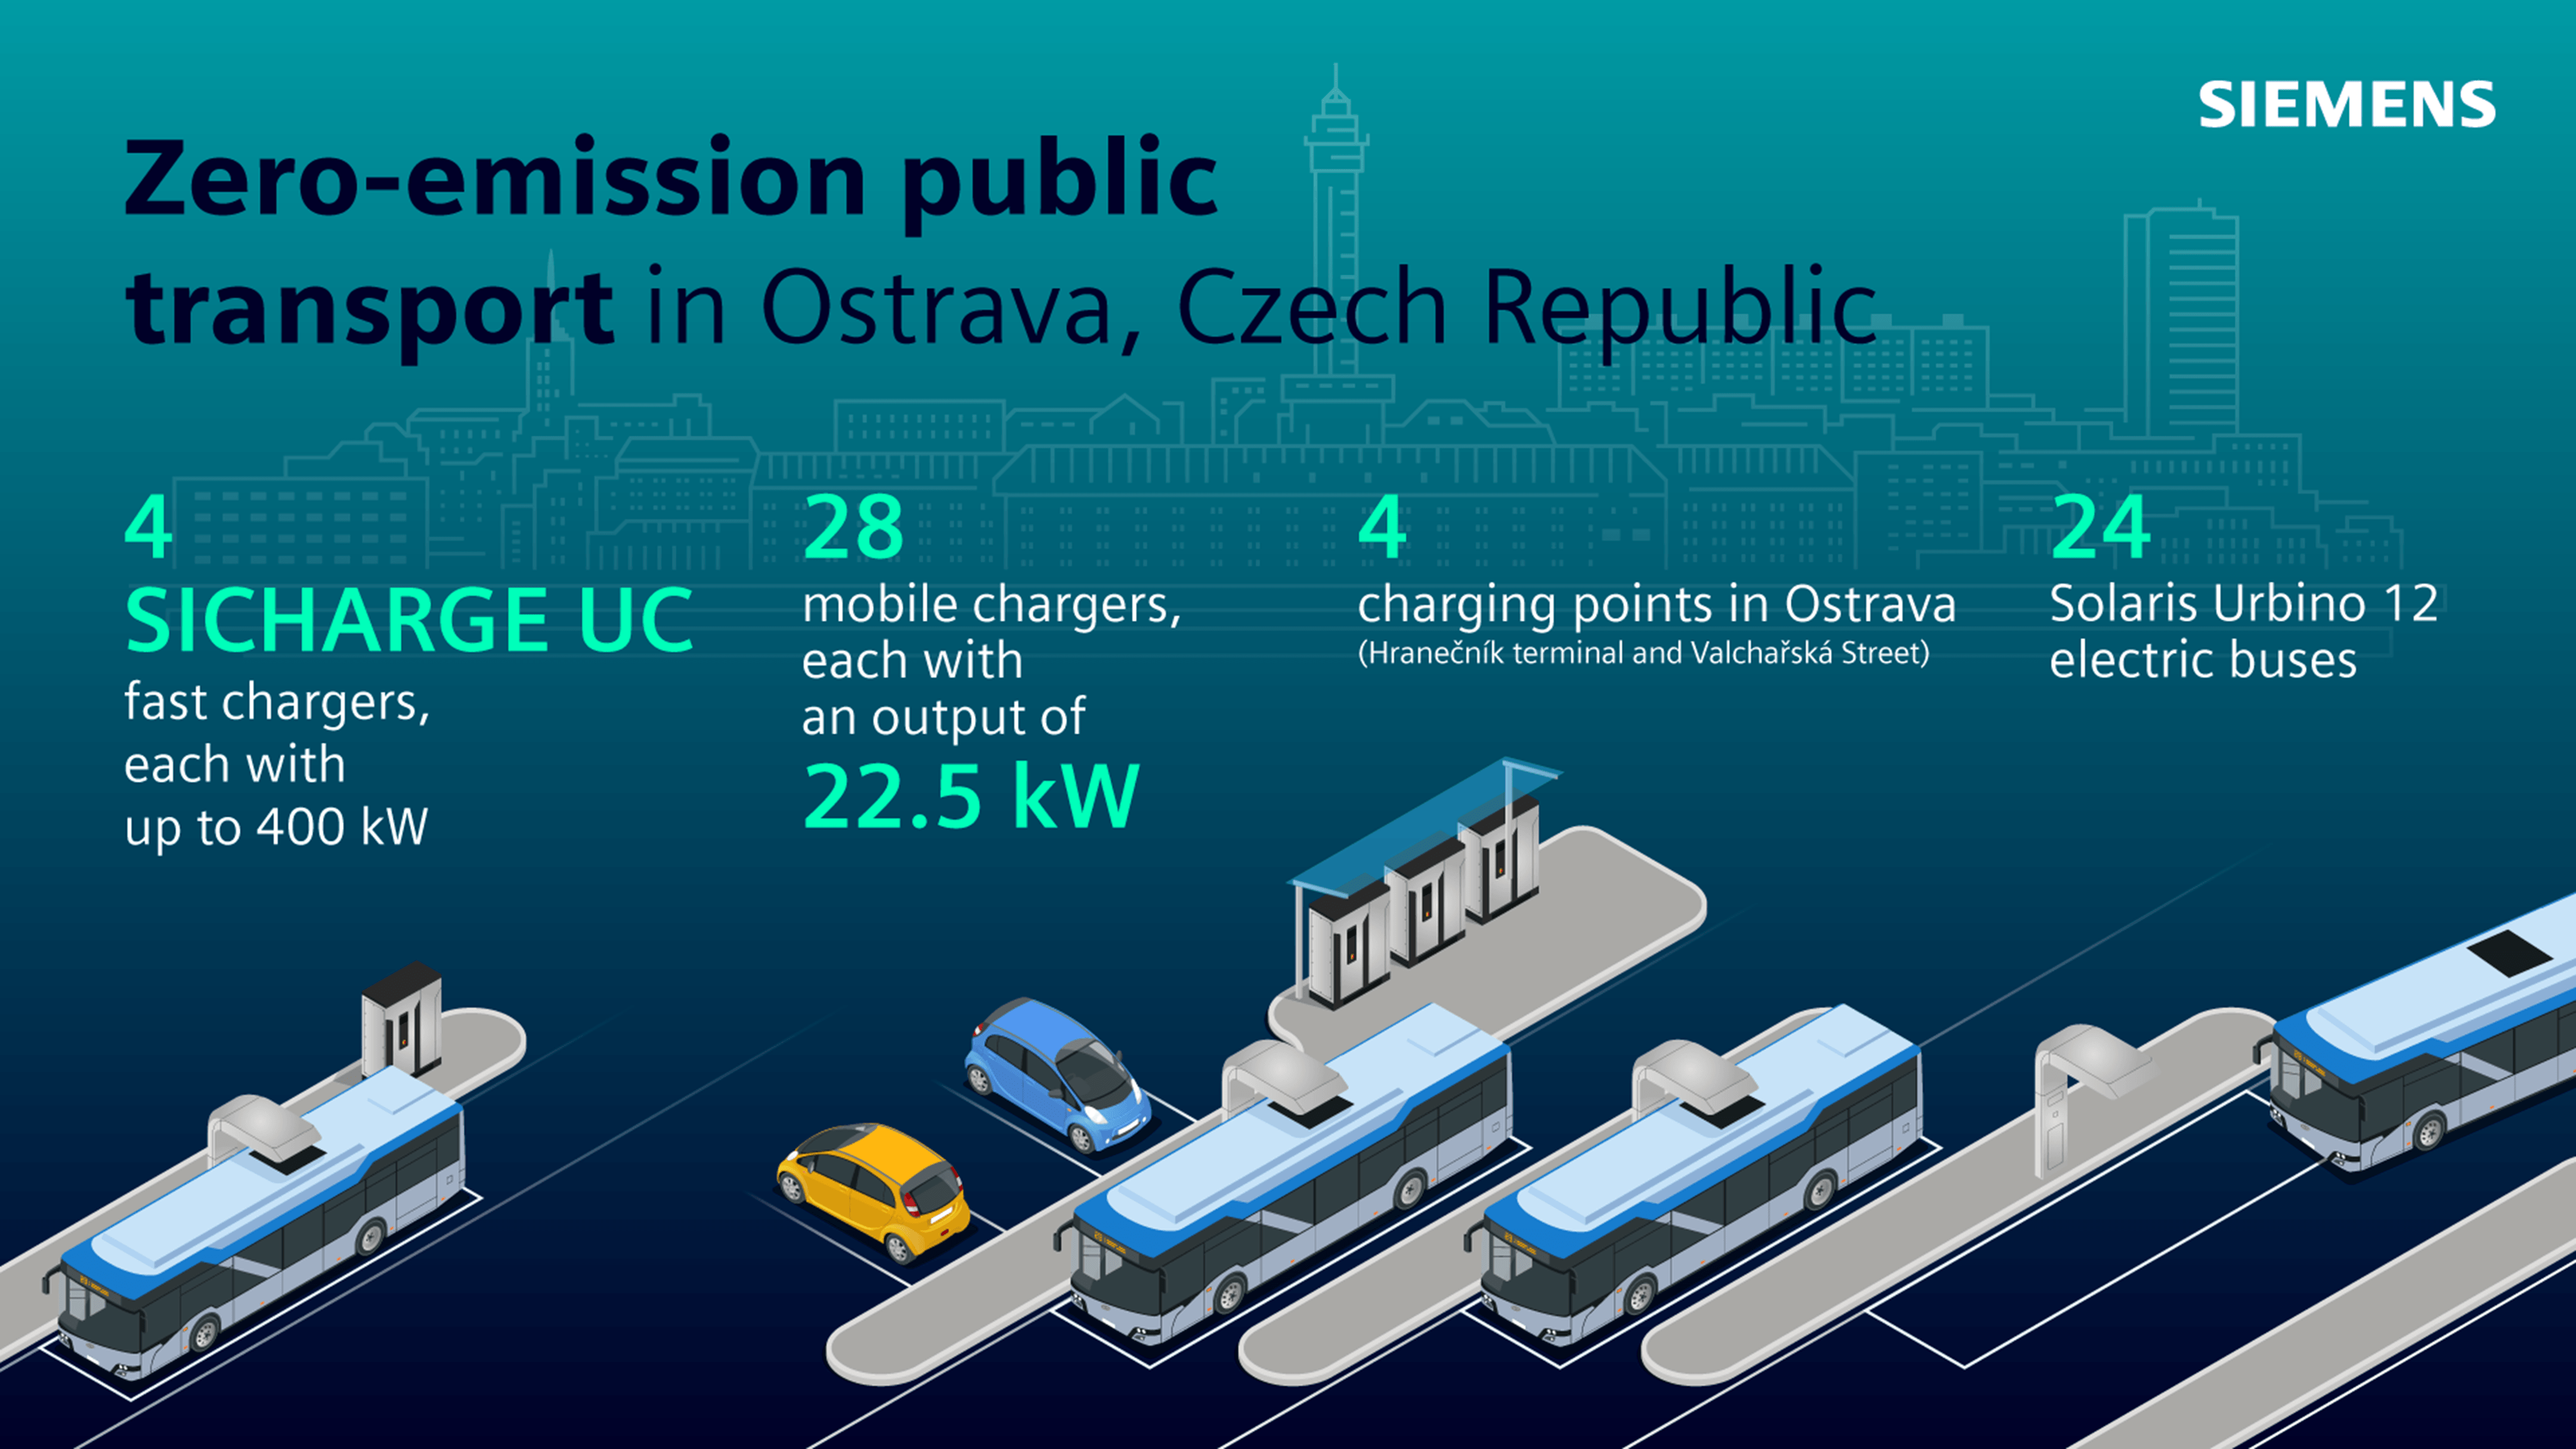 Zero-emission public transport in Ostrava.